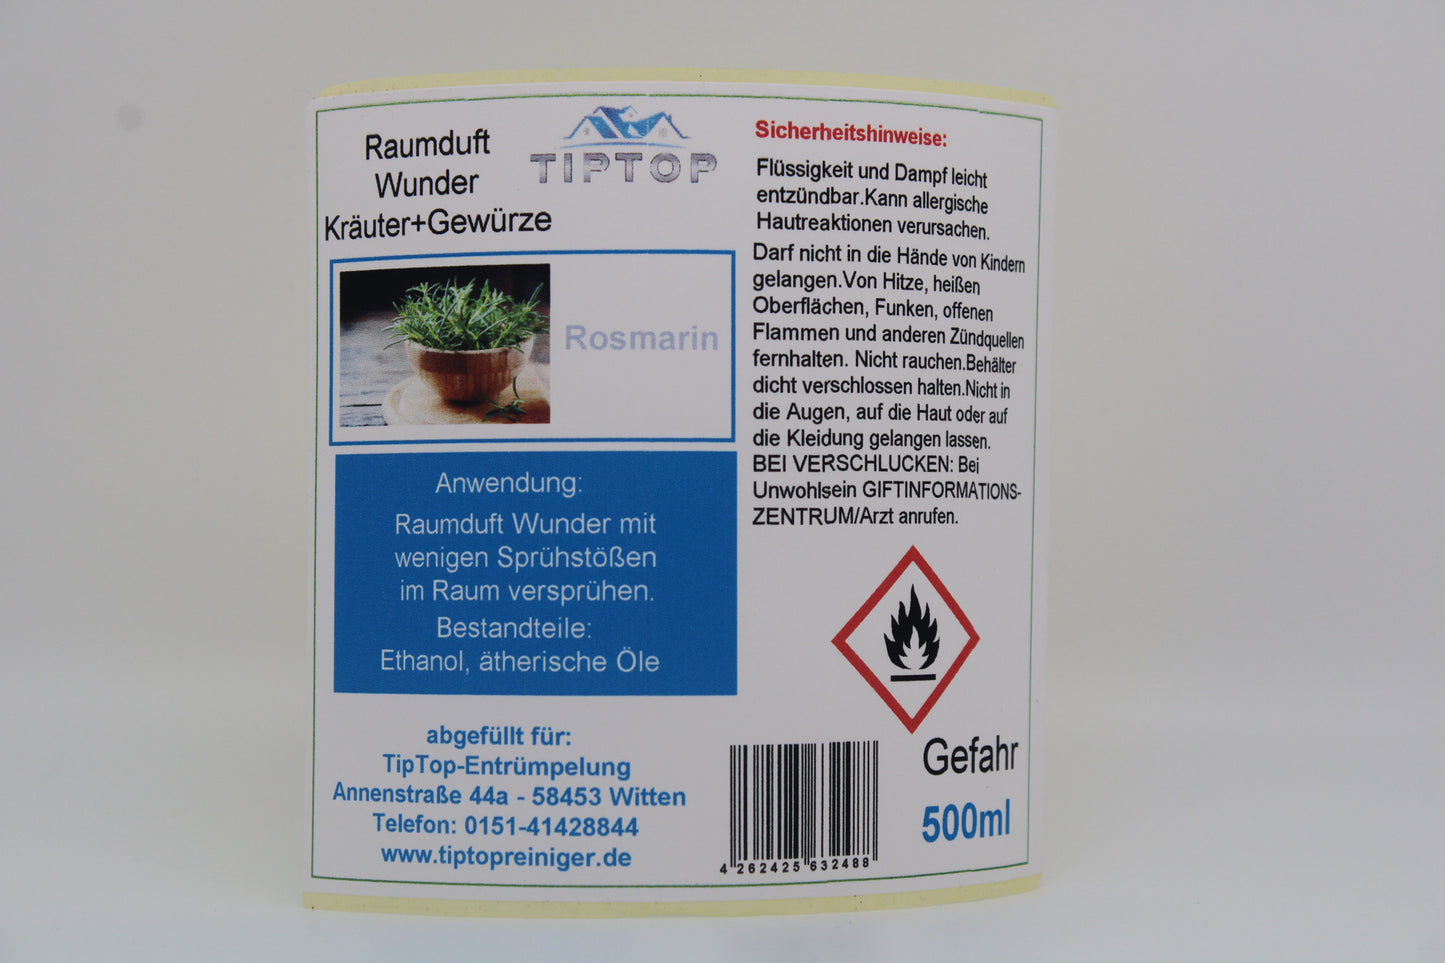 Raumduft-Wunder - 500 ml - Kräuter+Gewürze - mehrere Duftnoten zur Auswahl